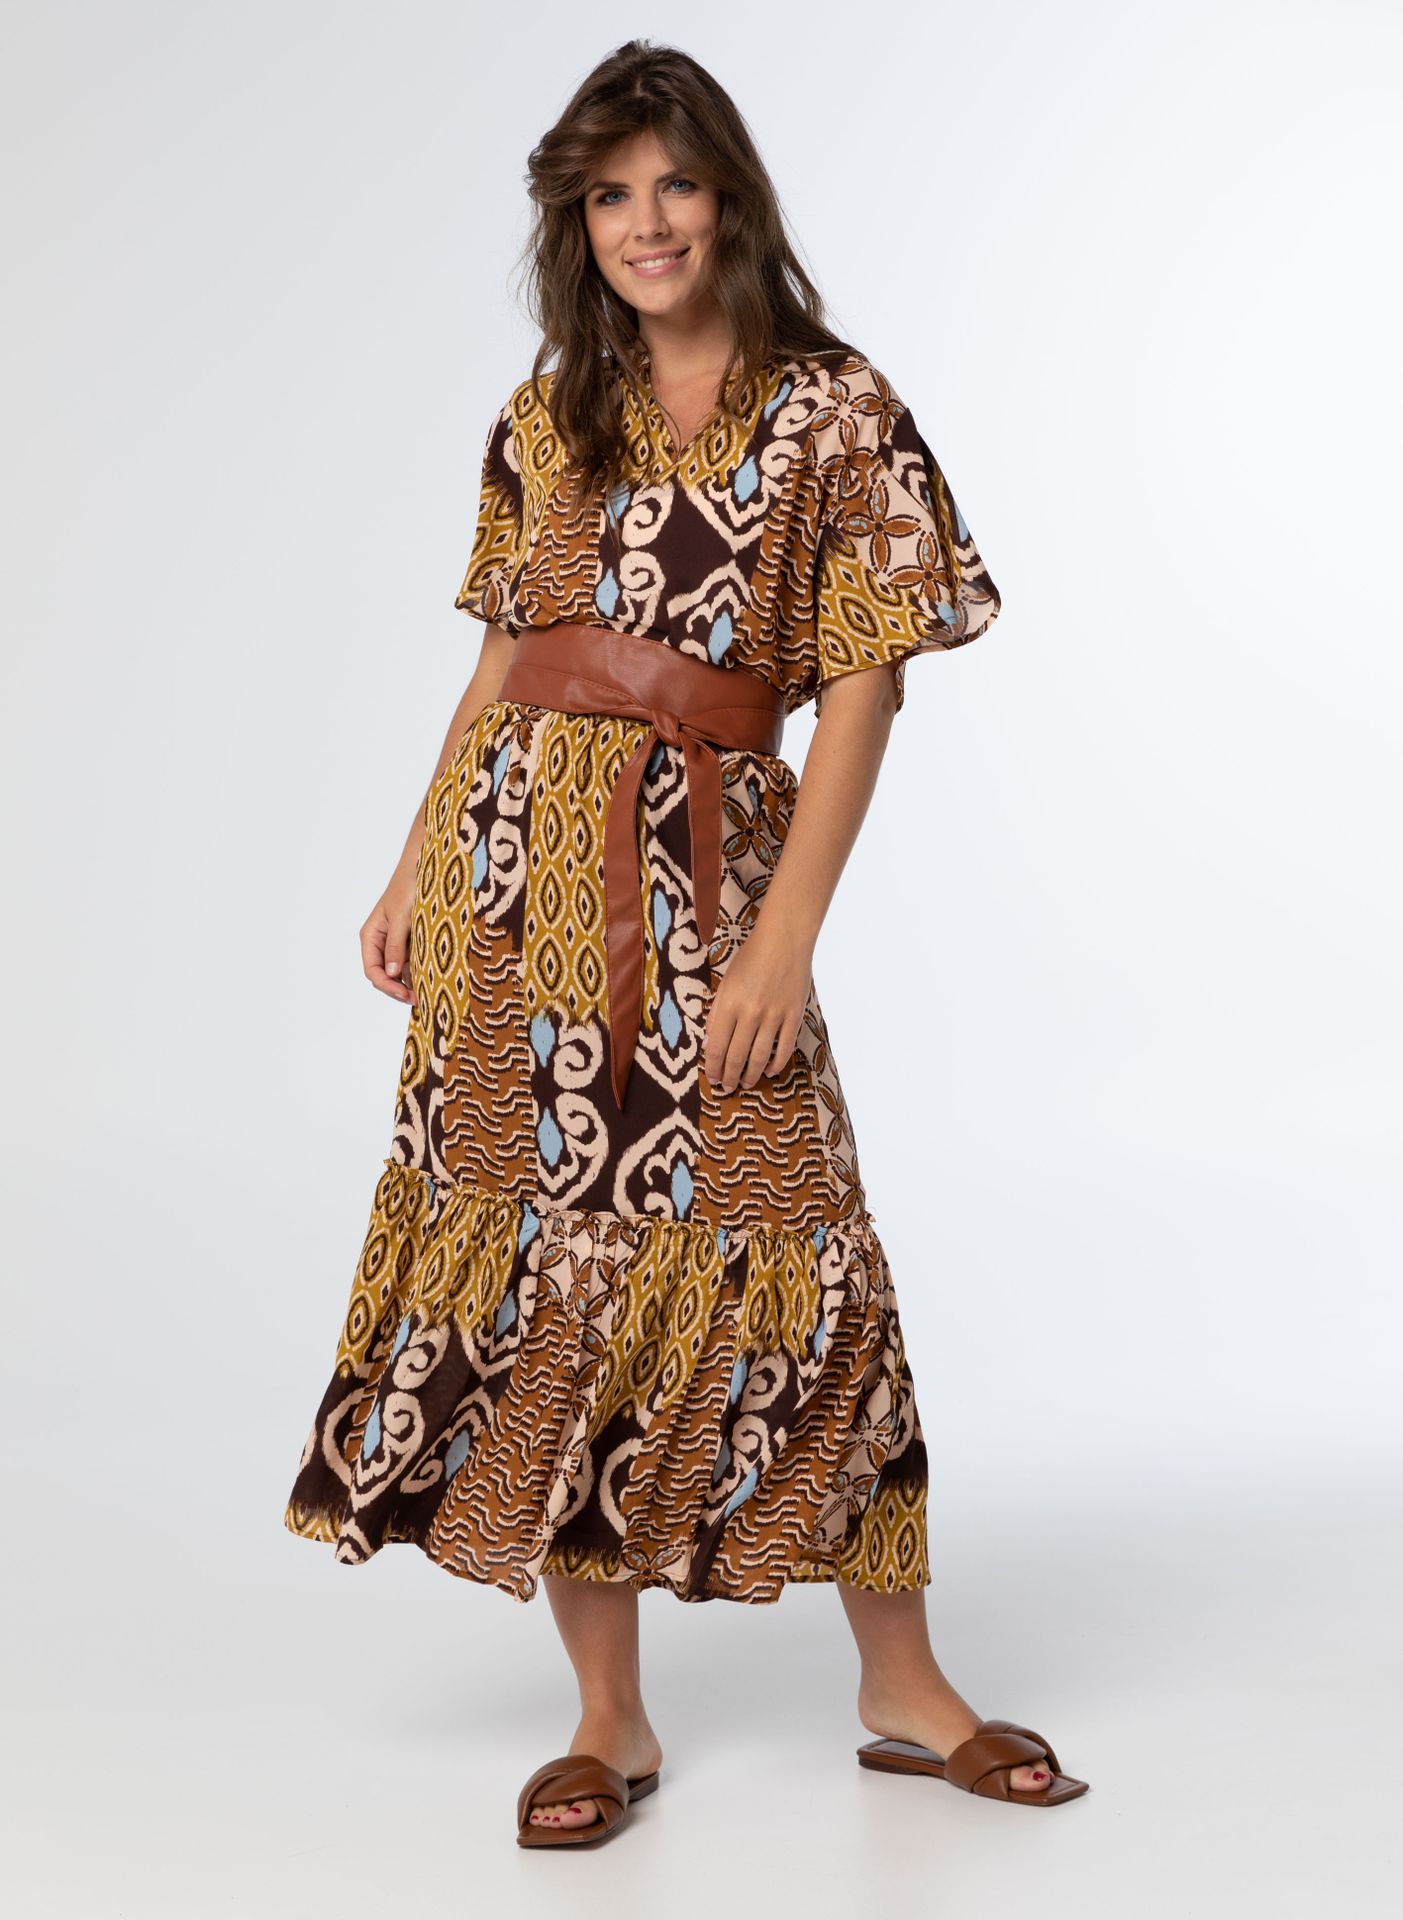 Norah Skirt, N1223 brown multicolor 212854-220